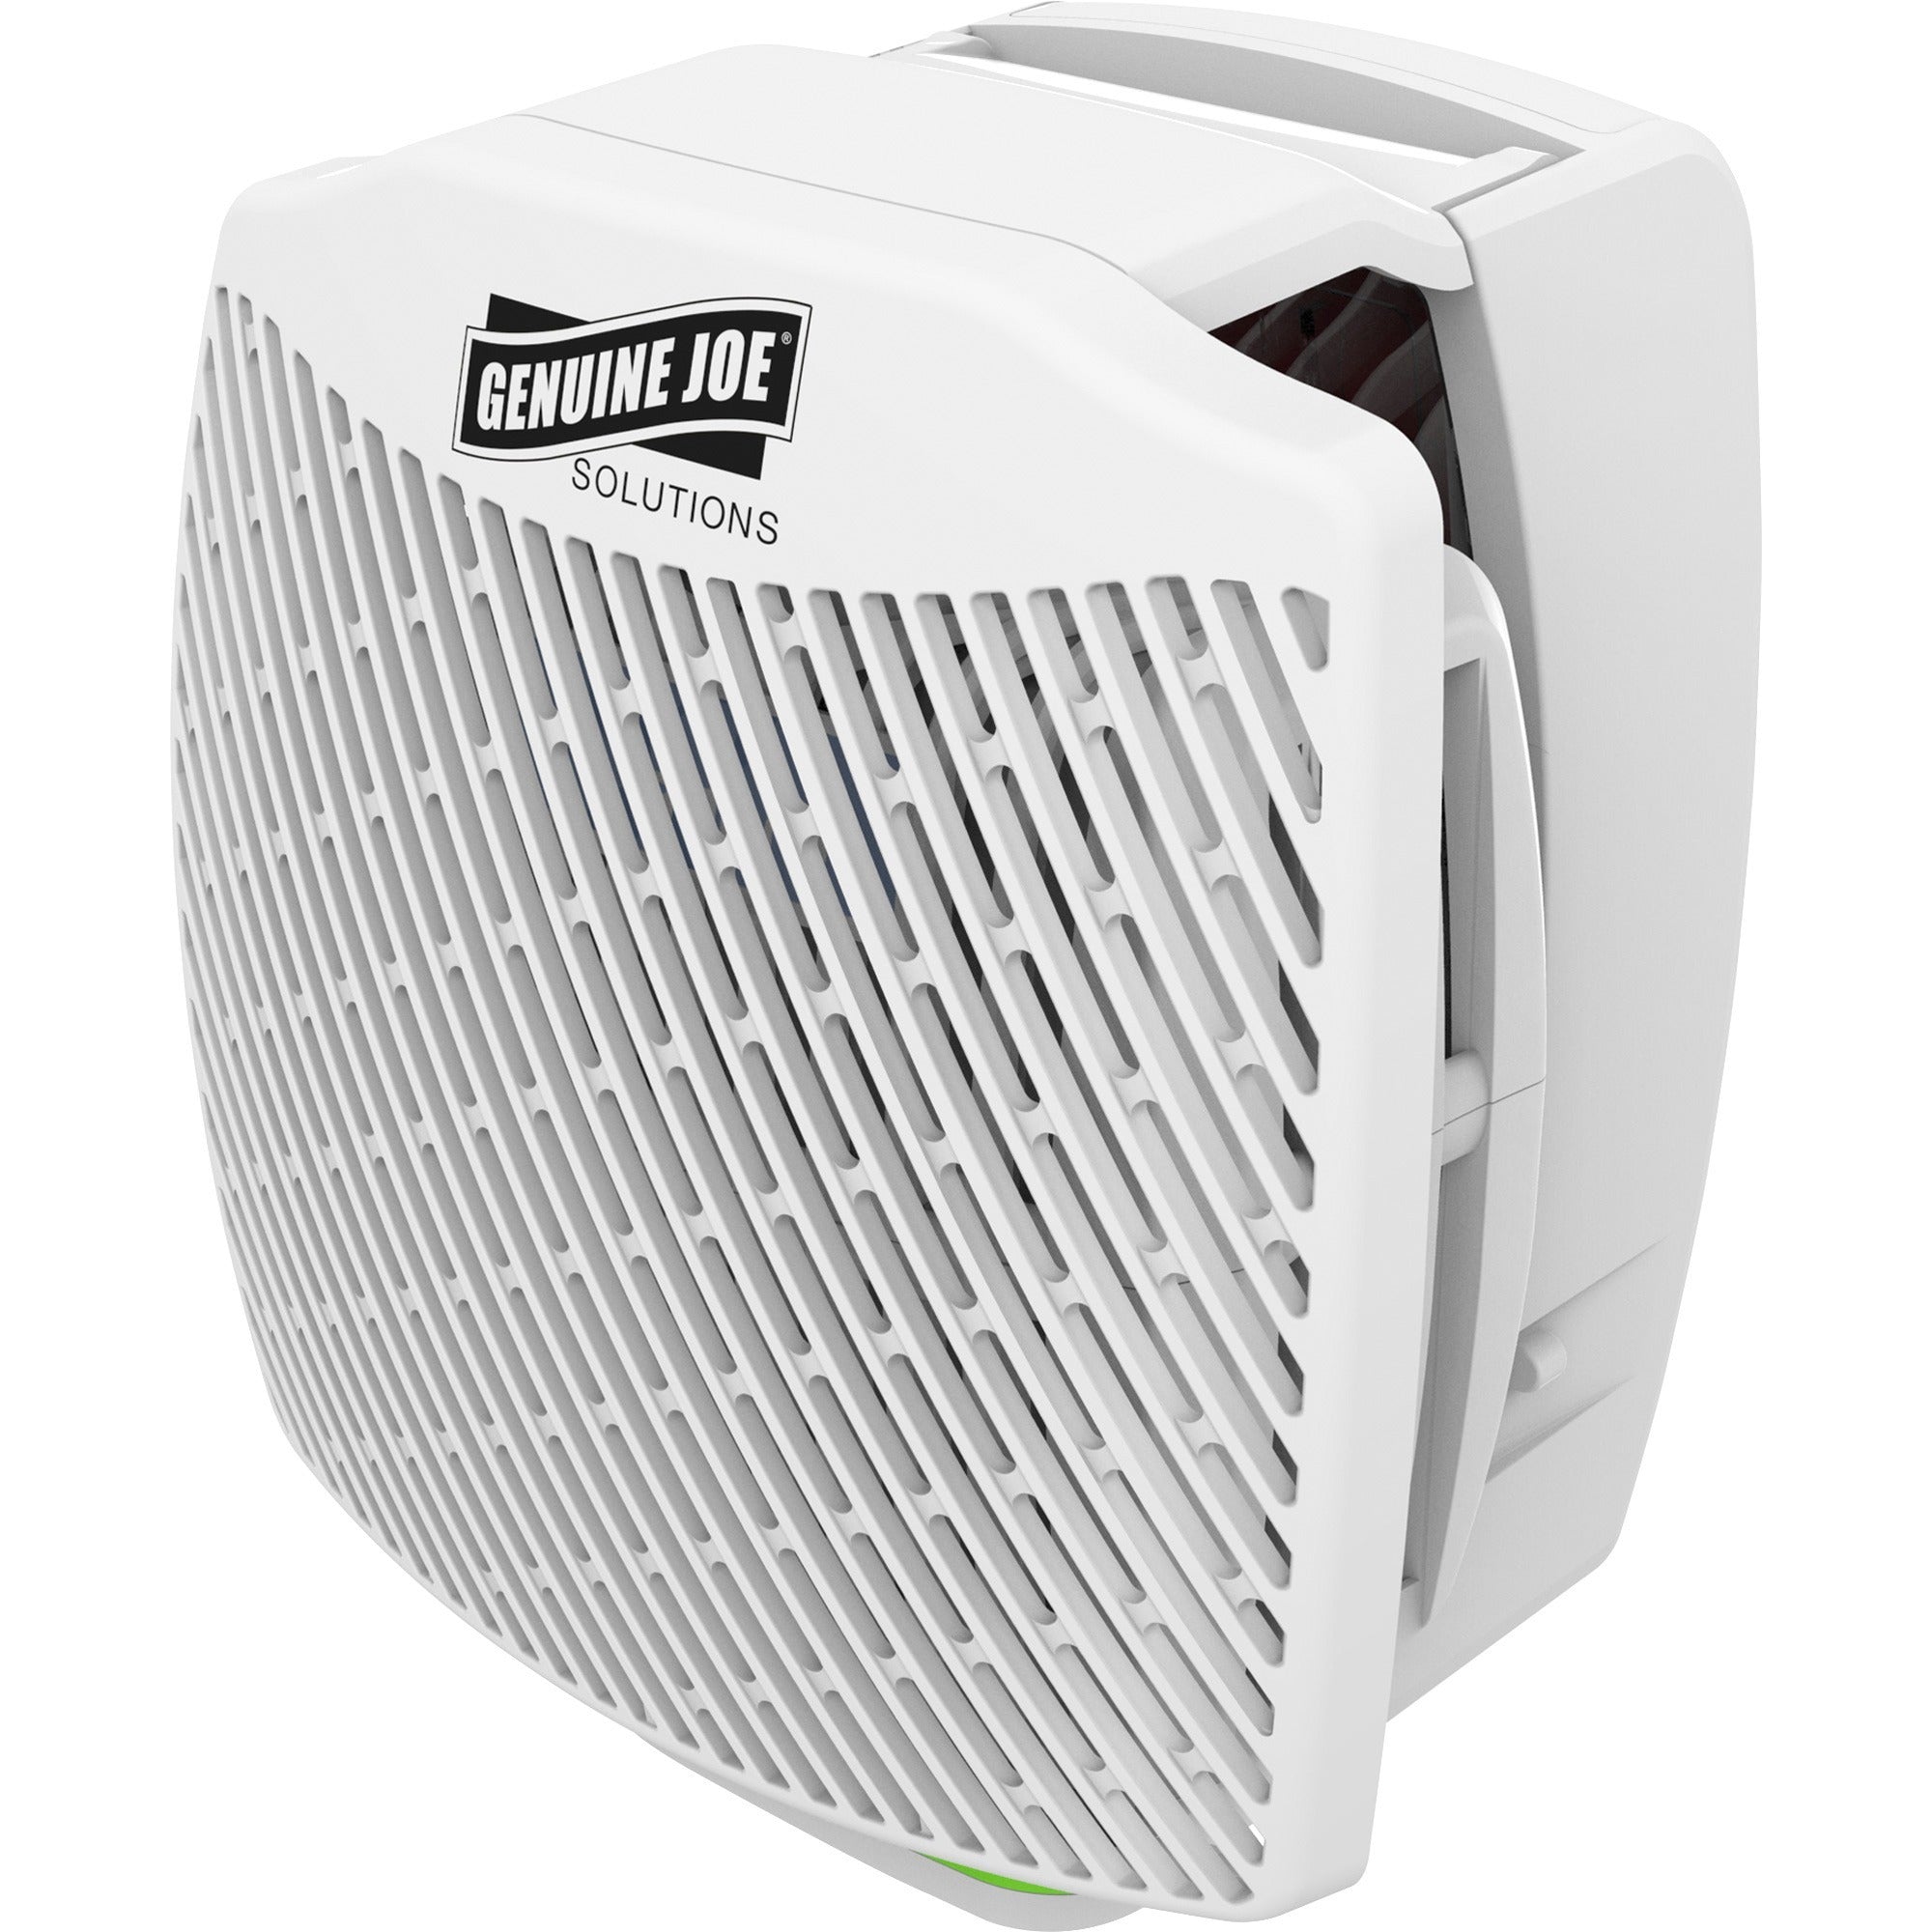 Genuine Joe Air Freshener Dispenser System - 30 Day Refill Life - 6000 ft Coverage - 1 Each - White - 3